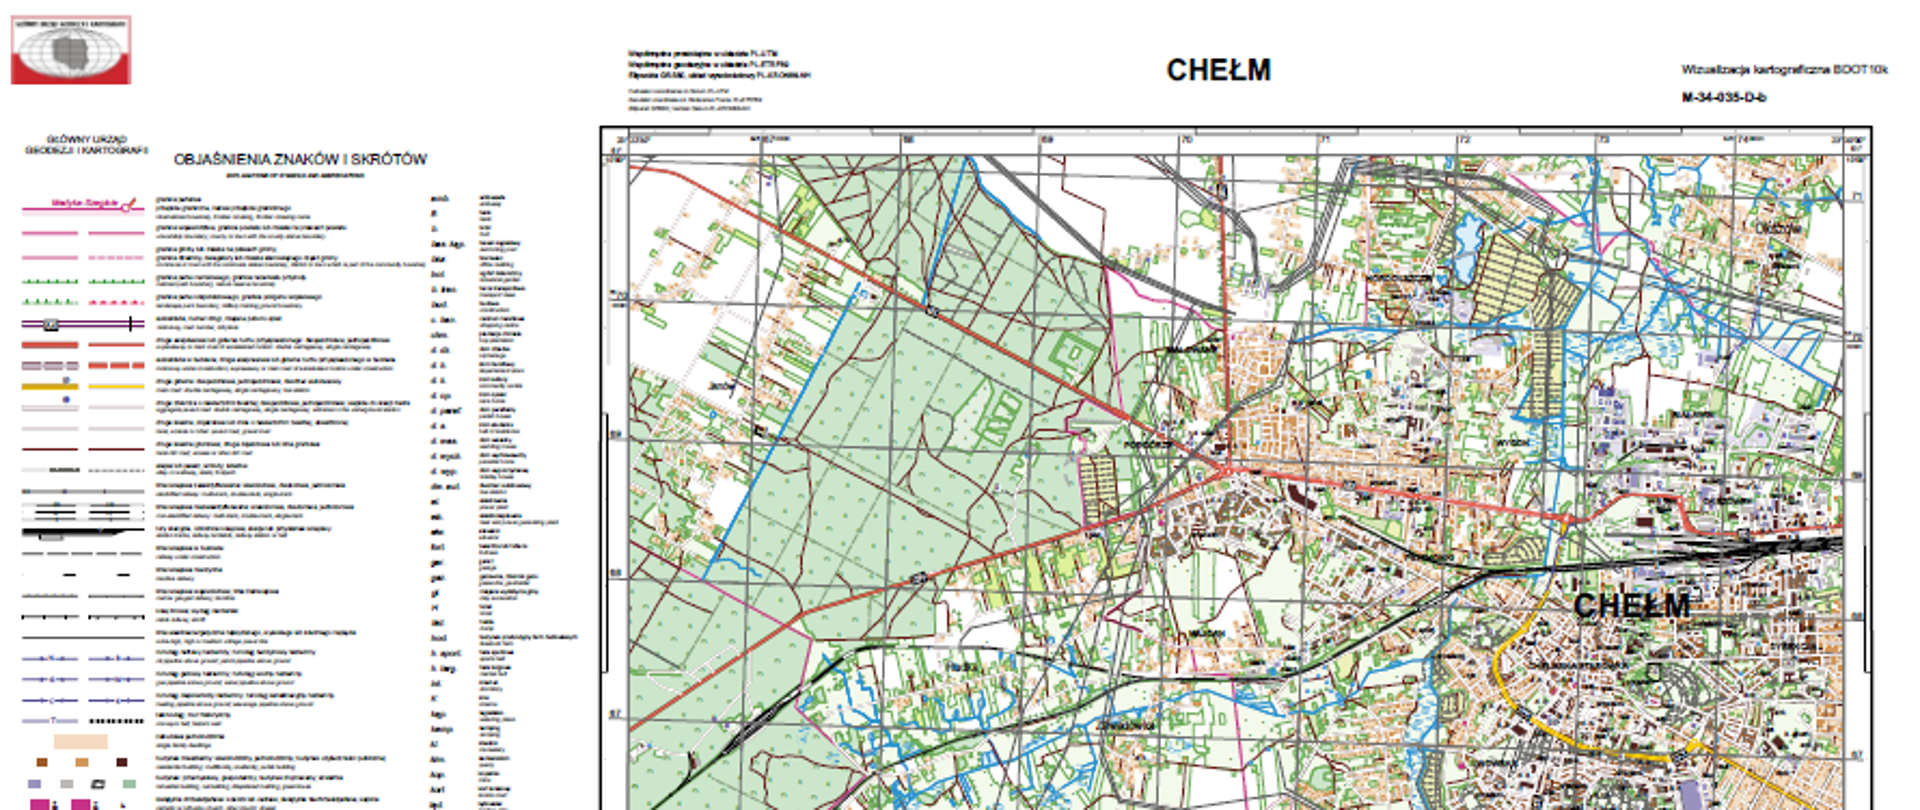 przykładowa wizualizacja kartograficzna BDOT10k w skali 1:25000 dla m. Chełm